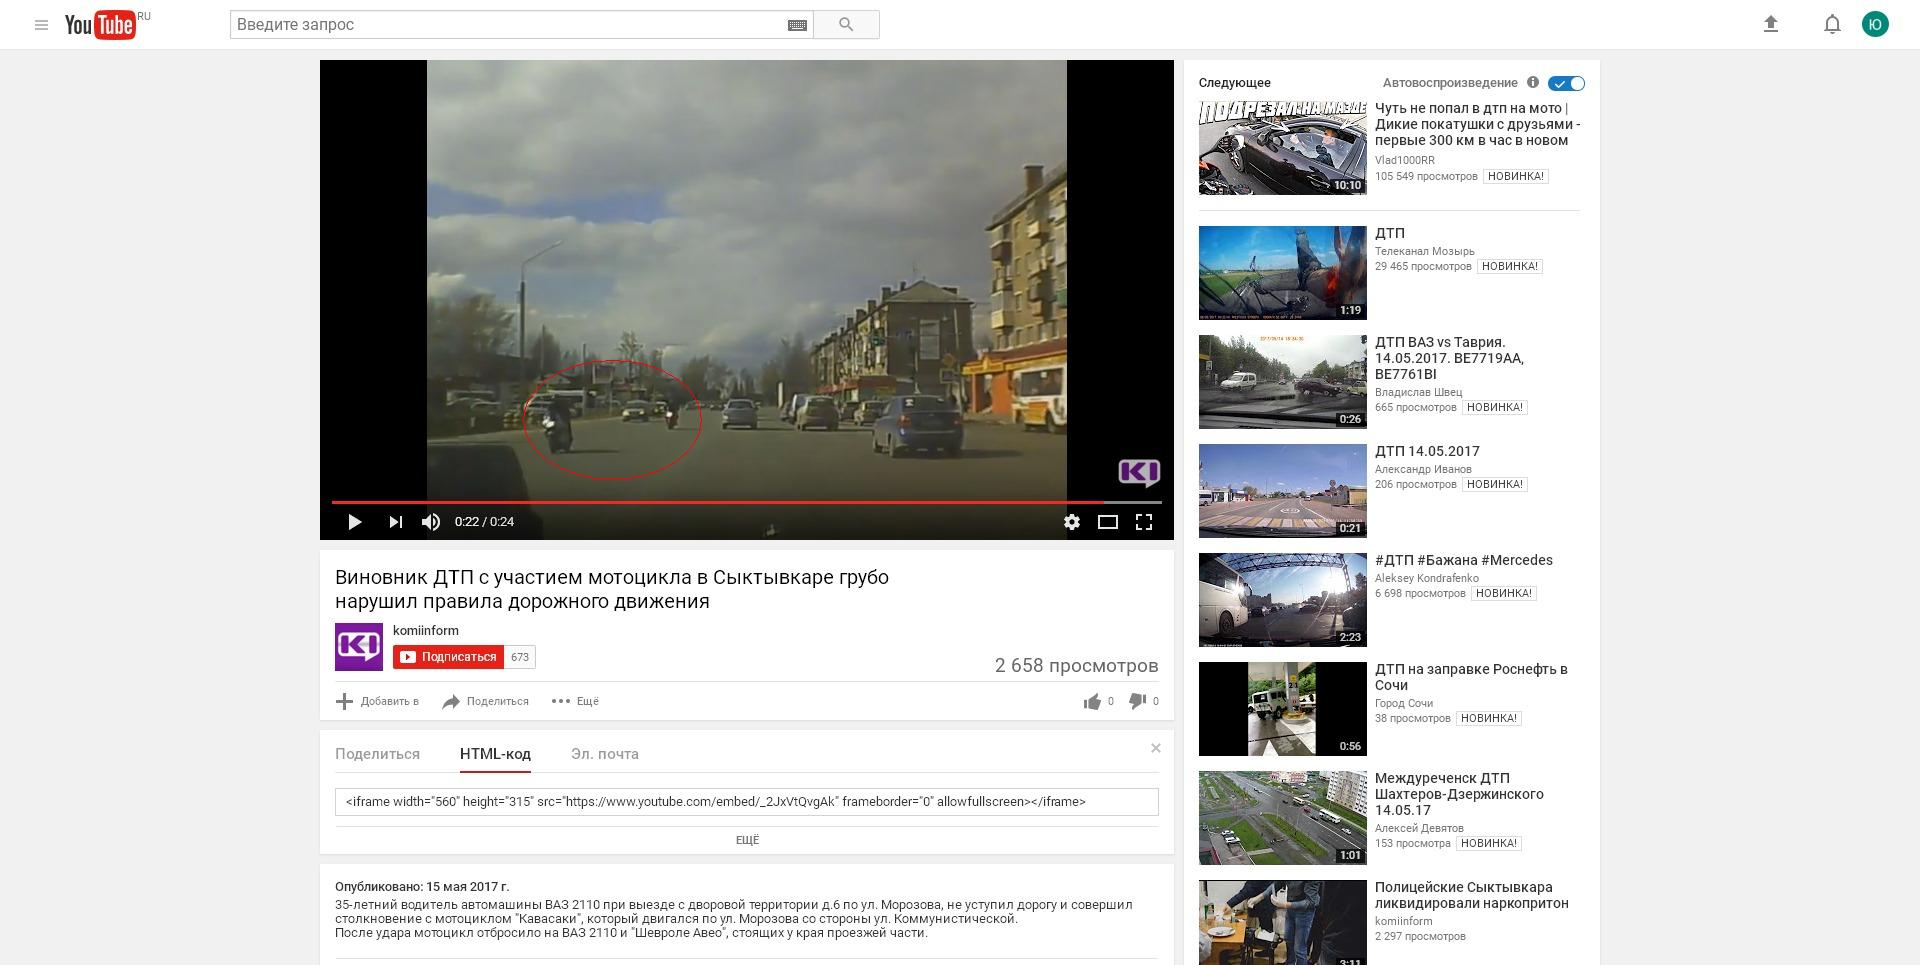 Появилось видео, снятое в момент ДТП с мотоциклом и "десяткой" в Сыктывкаре